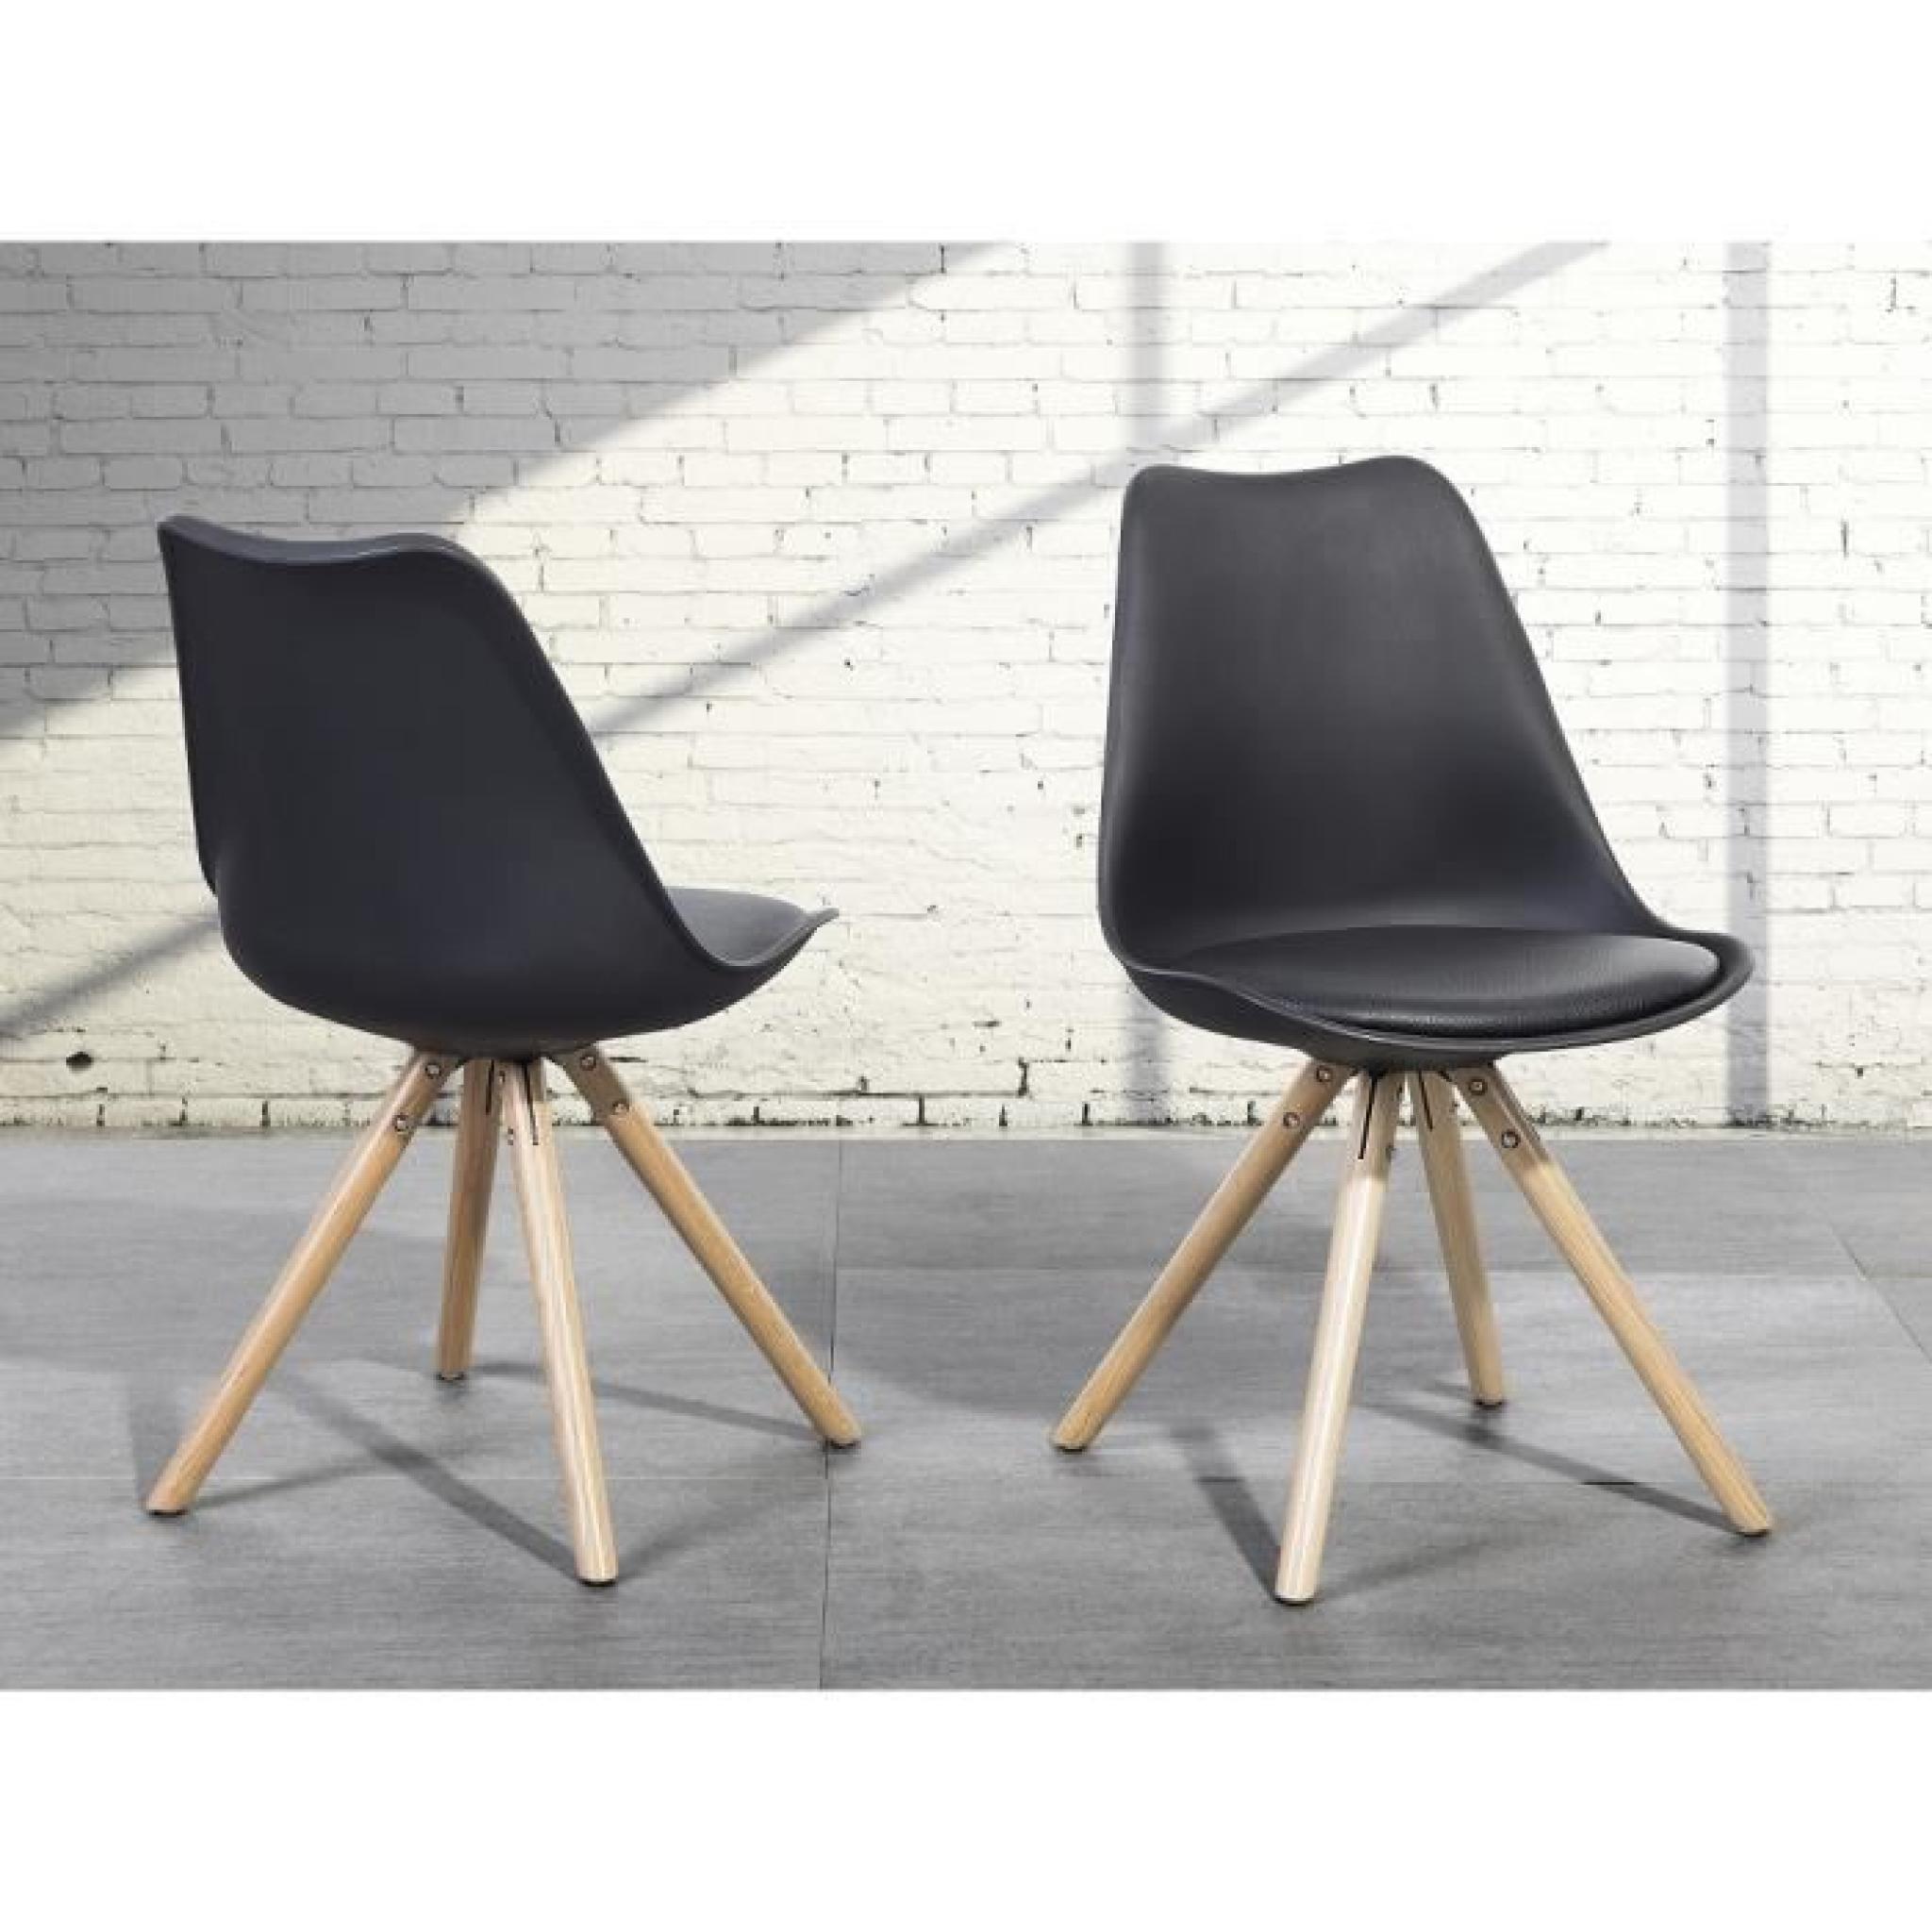 Chaise design - siège en plastique noir - Moca